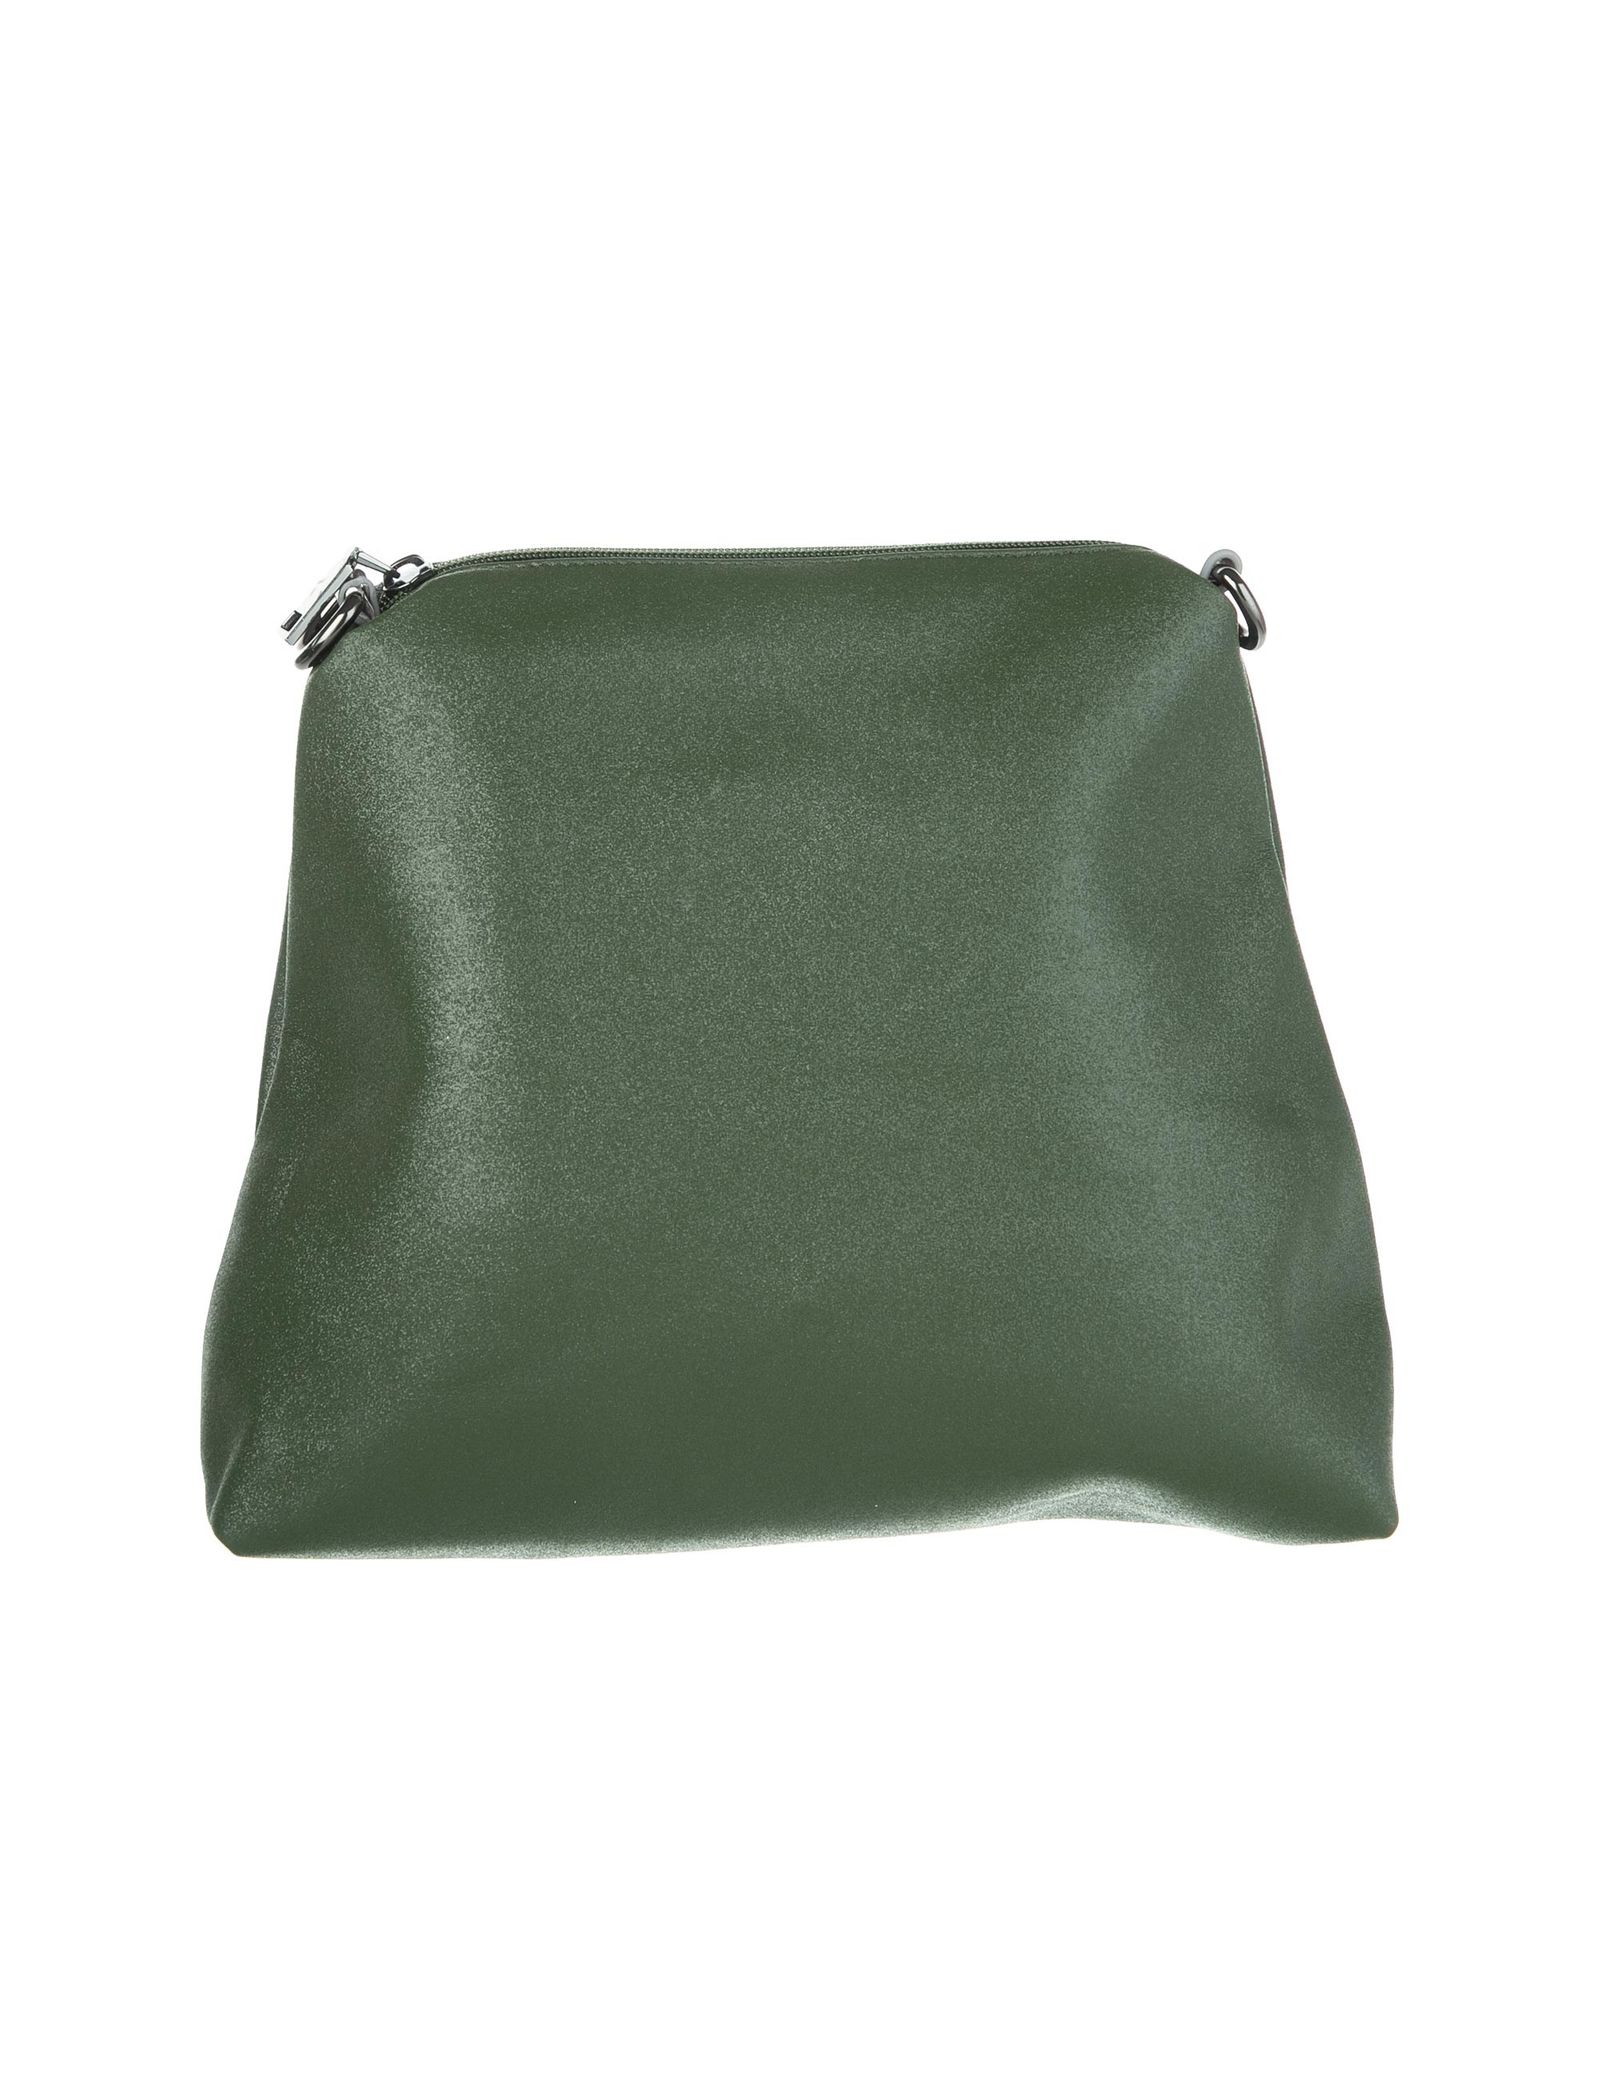 کیف دوشی روزمره زنانه - شانتال تک سایز - سبز - 6